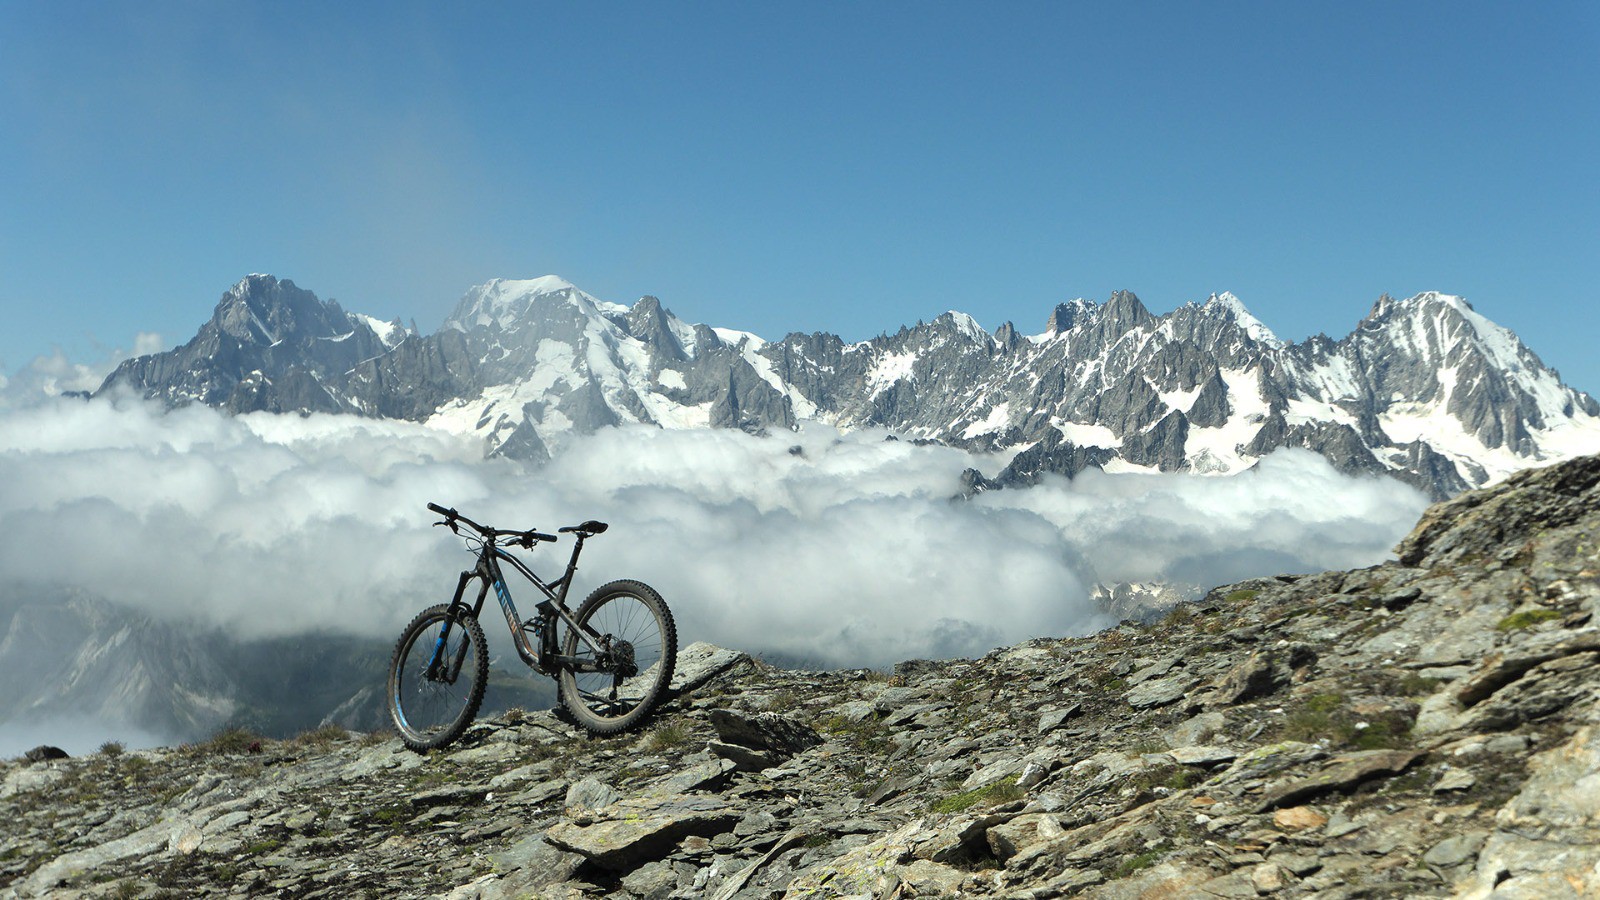 Enfin la vue sur le massif du Mont Blanc !
